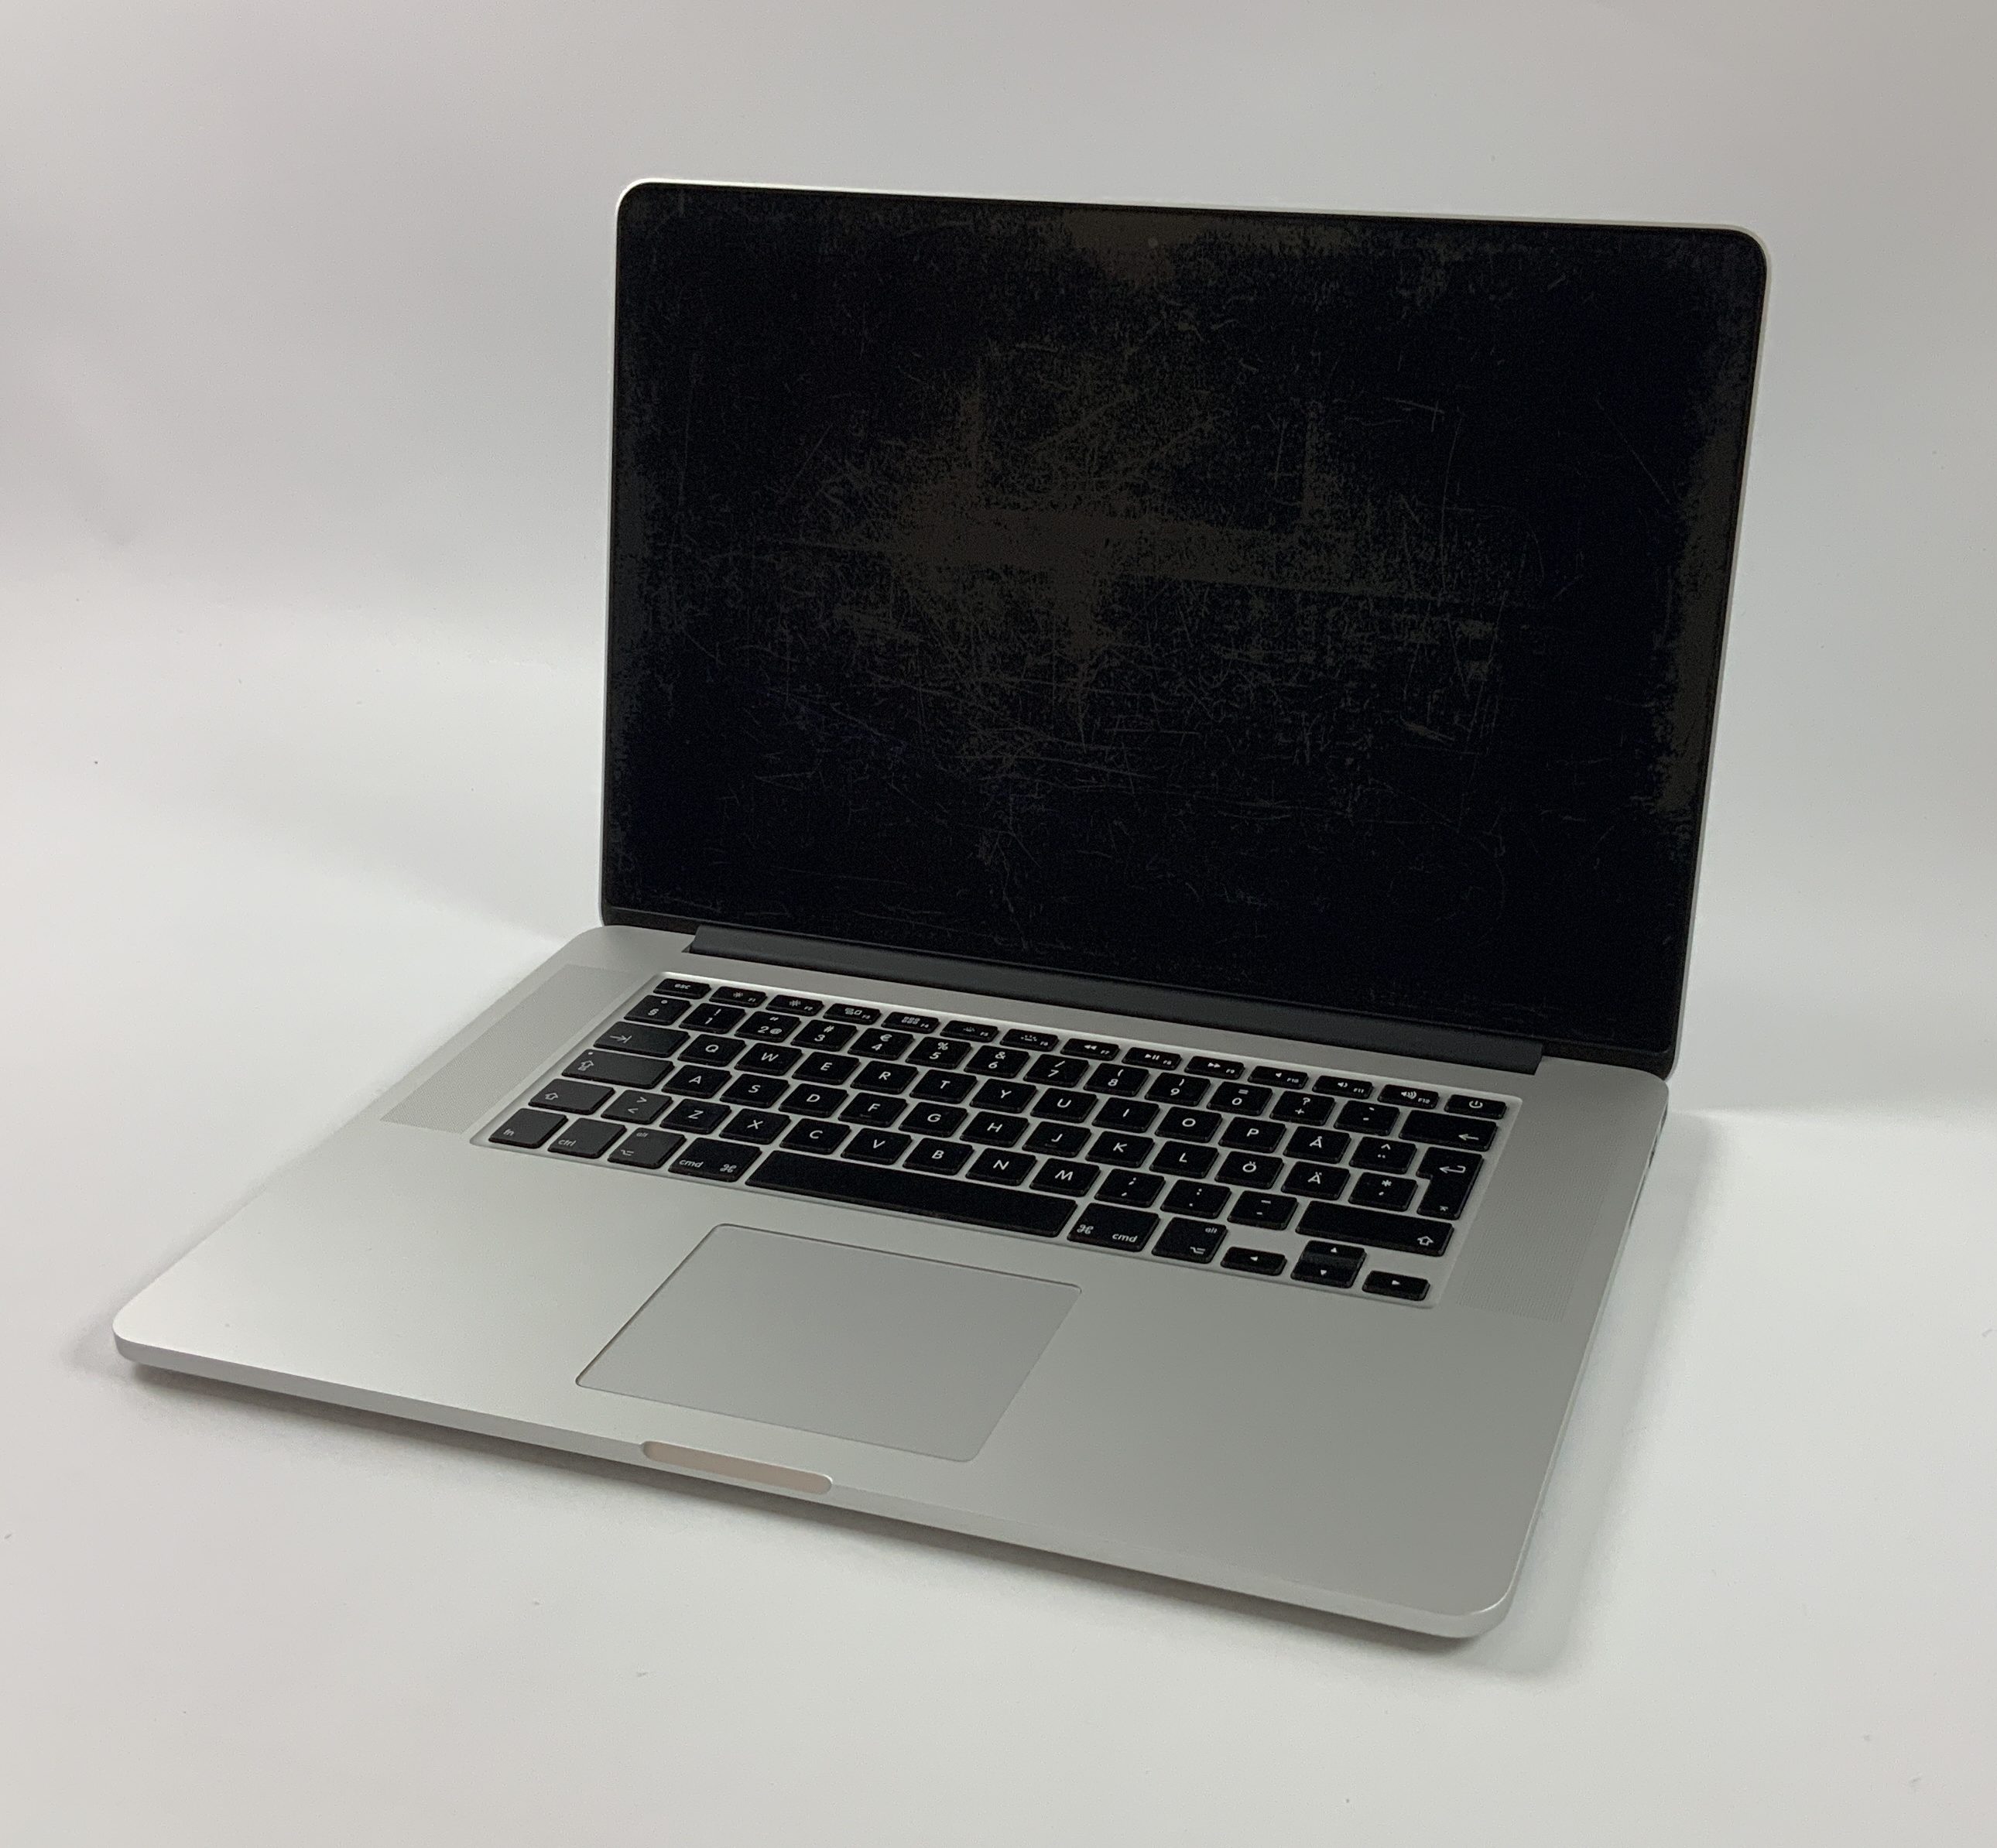 MacBook Pro Retina 15" Mid 2015 (Intel Quad-Core i7 2.2 GHz 16 GB RAM 512 GB SSD), Intel Quad-Core i7 2.2 GHz, 16 GB RAM, 512 GB SSD, Bild 1